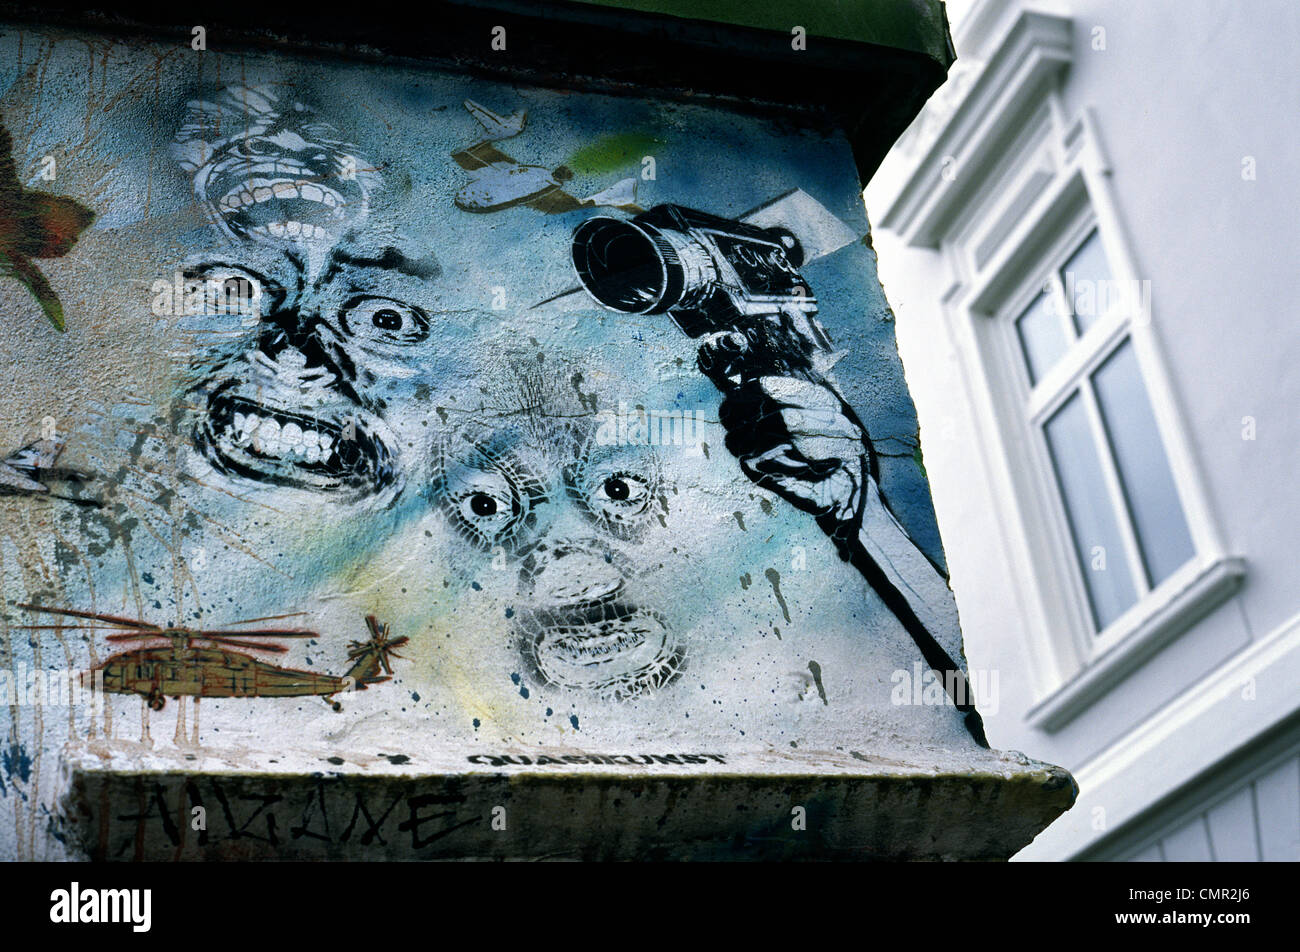 Graffiti street art in Sankt Pauli district of Hamburg. Stock Photo